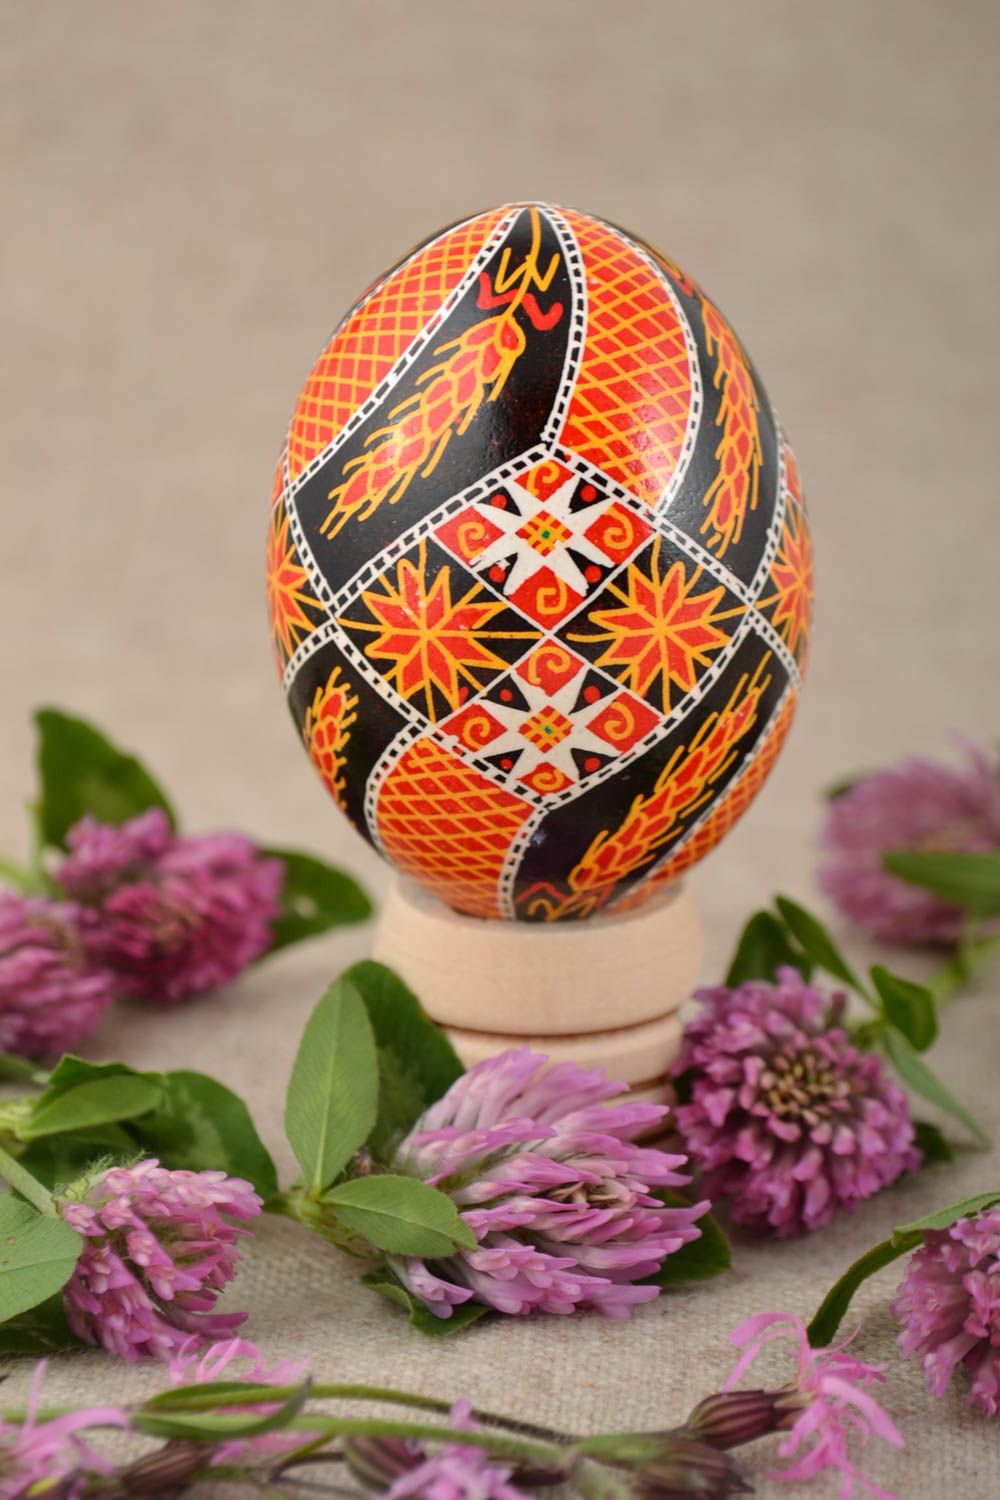 Пасхальное яйцо расписанное акриловыми красками куриное хэнд мэйд с колосками фото 1